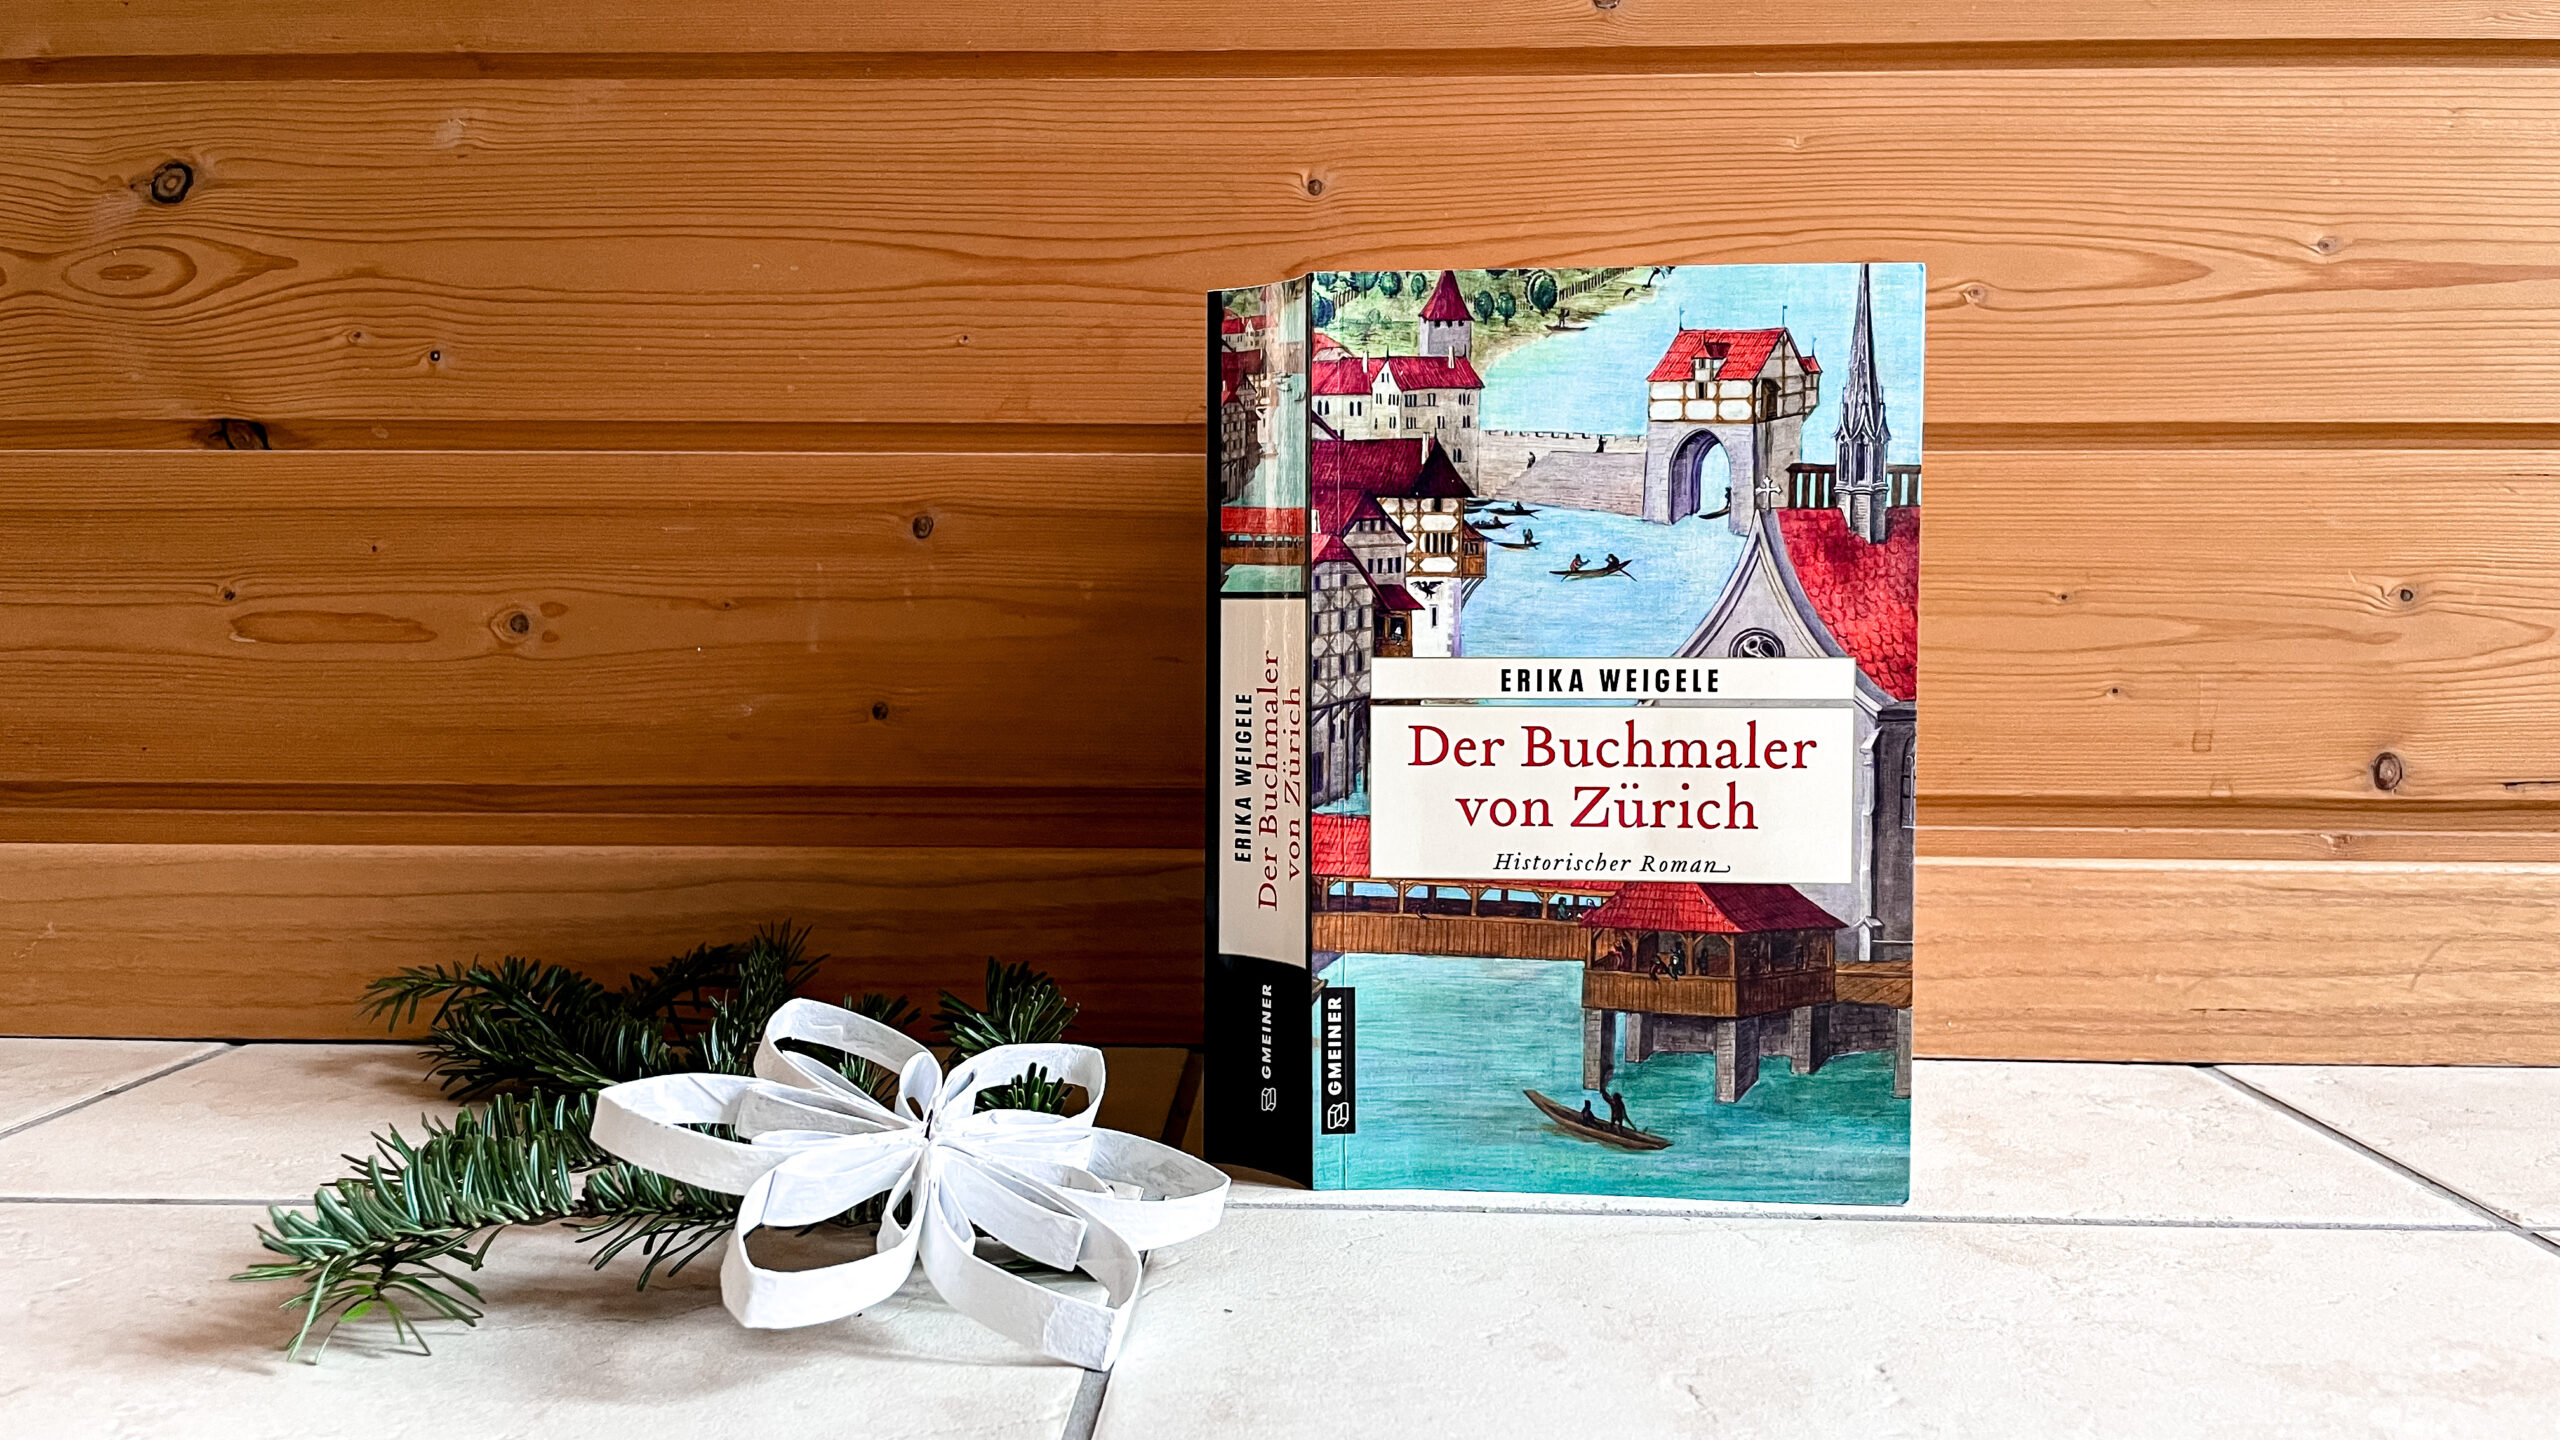 Das Buch «Der Buchmaler von Zürich» steht auf weissen Fliesen an einen Holzwand gelehnt. Daneben liebt ein Tannenzweig und eine aus Karton gebastelte weisse Schneeflocke.